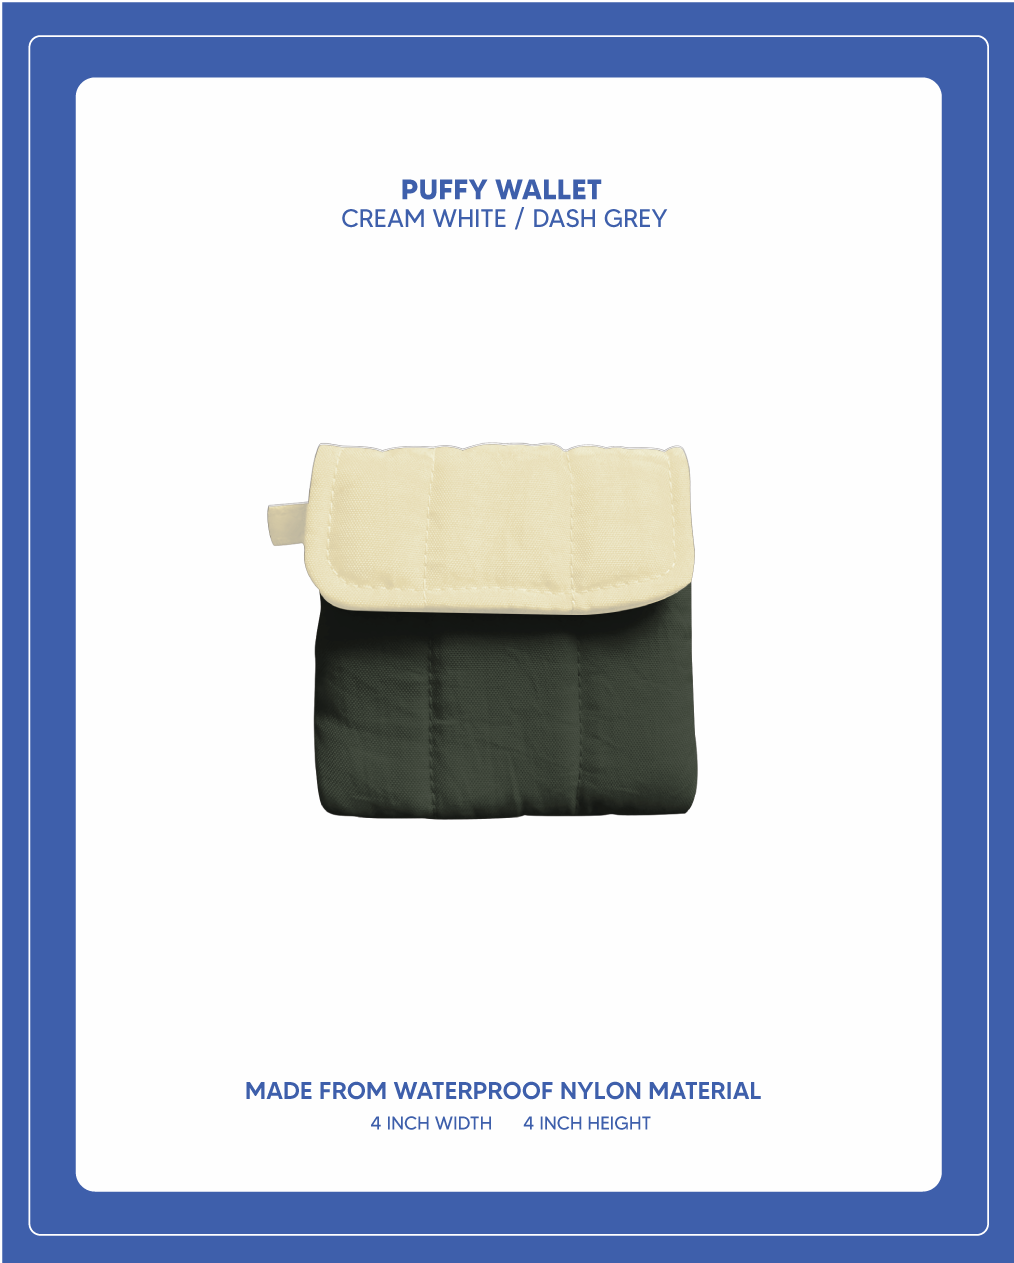 Puffy Wallet - Cream White / Dash Grey